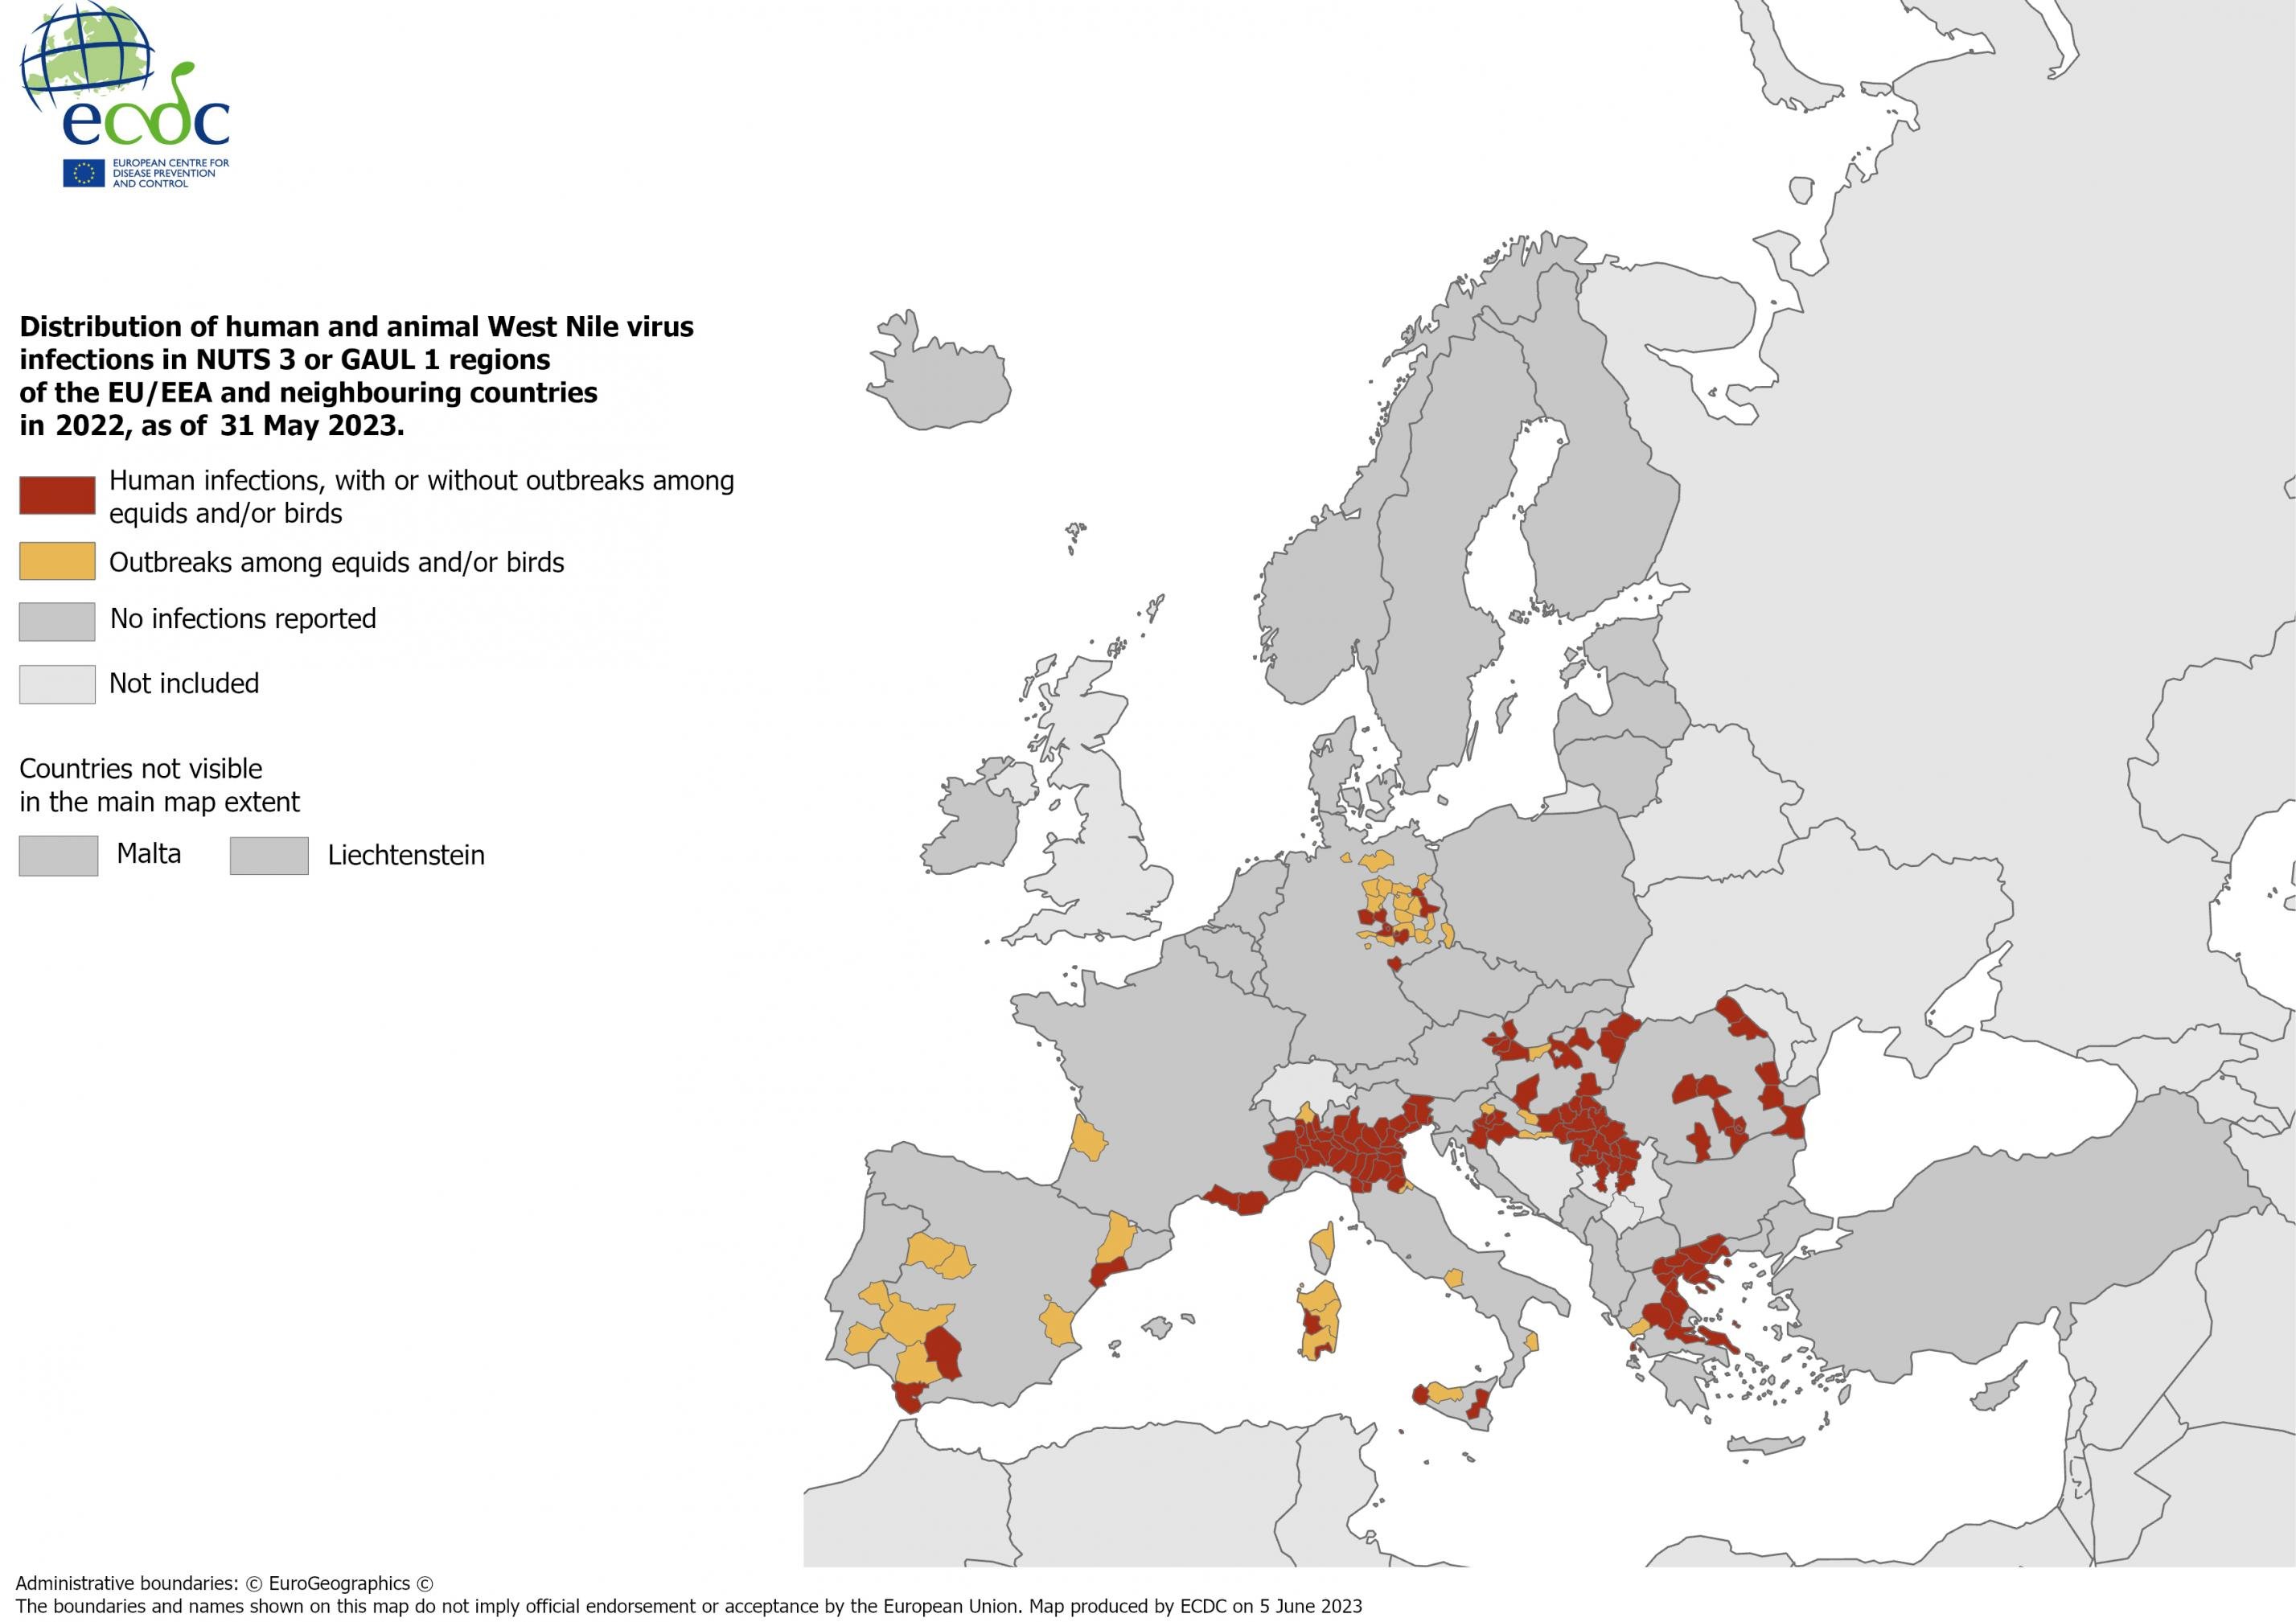 Das Bild zeigt die Orte auf einer Europa-Karte, wo es zwischen 2012 und 2022 zu menschlichen Infektionen mit dem West-Nil-Virus kam.